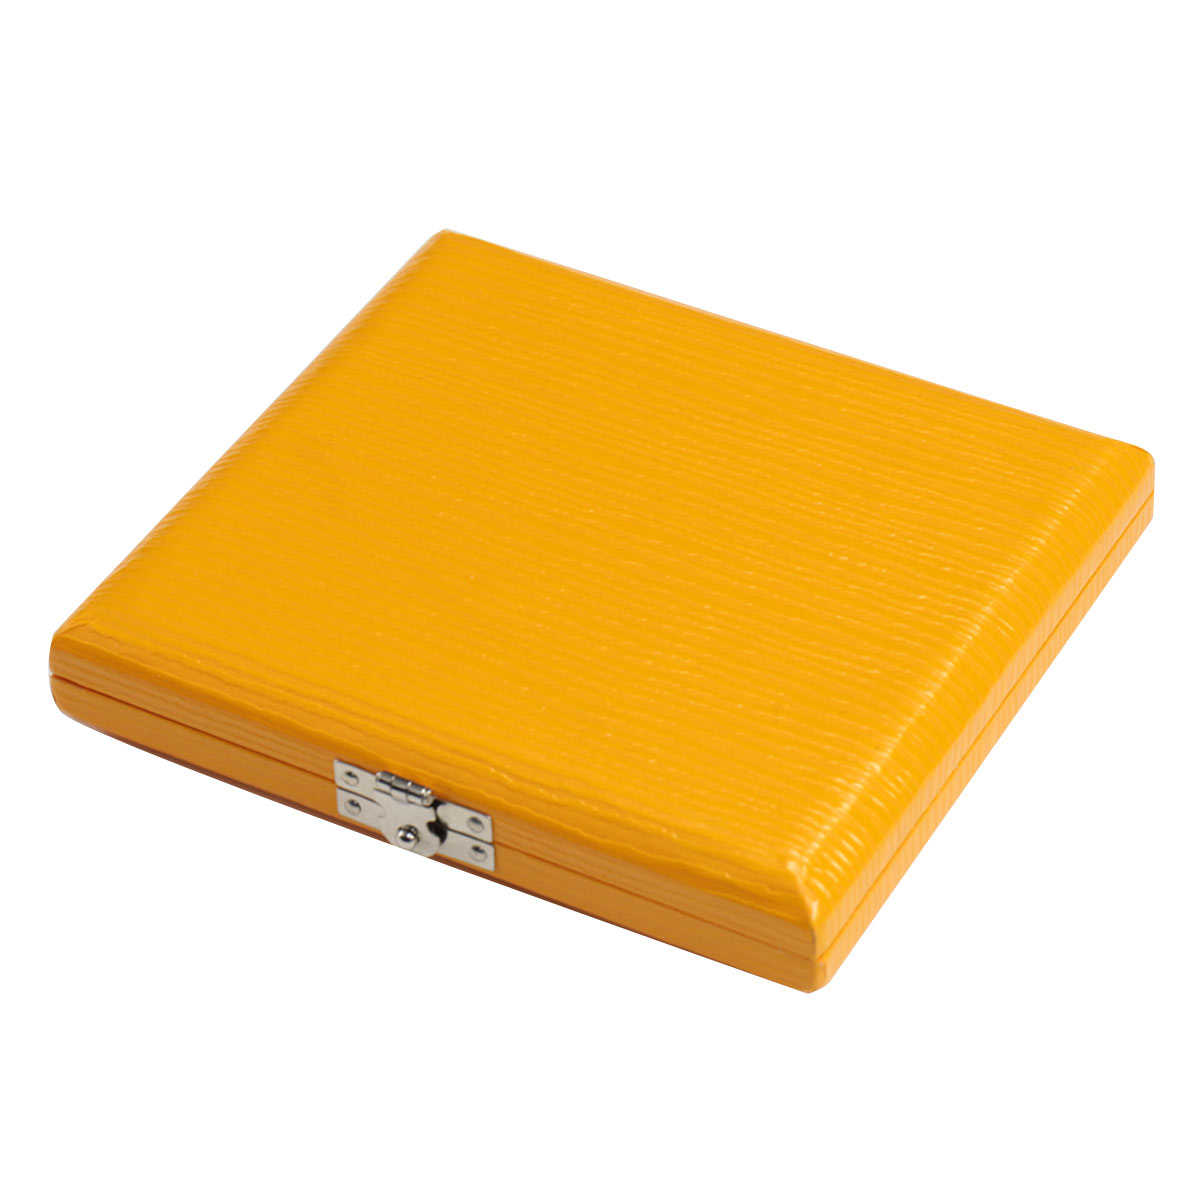 VIVACE リードケース BX-5 オレンジ ヴィヴァーチェ リードケース 5枚収納【バリトンサックス用】 イシバシ楽器